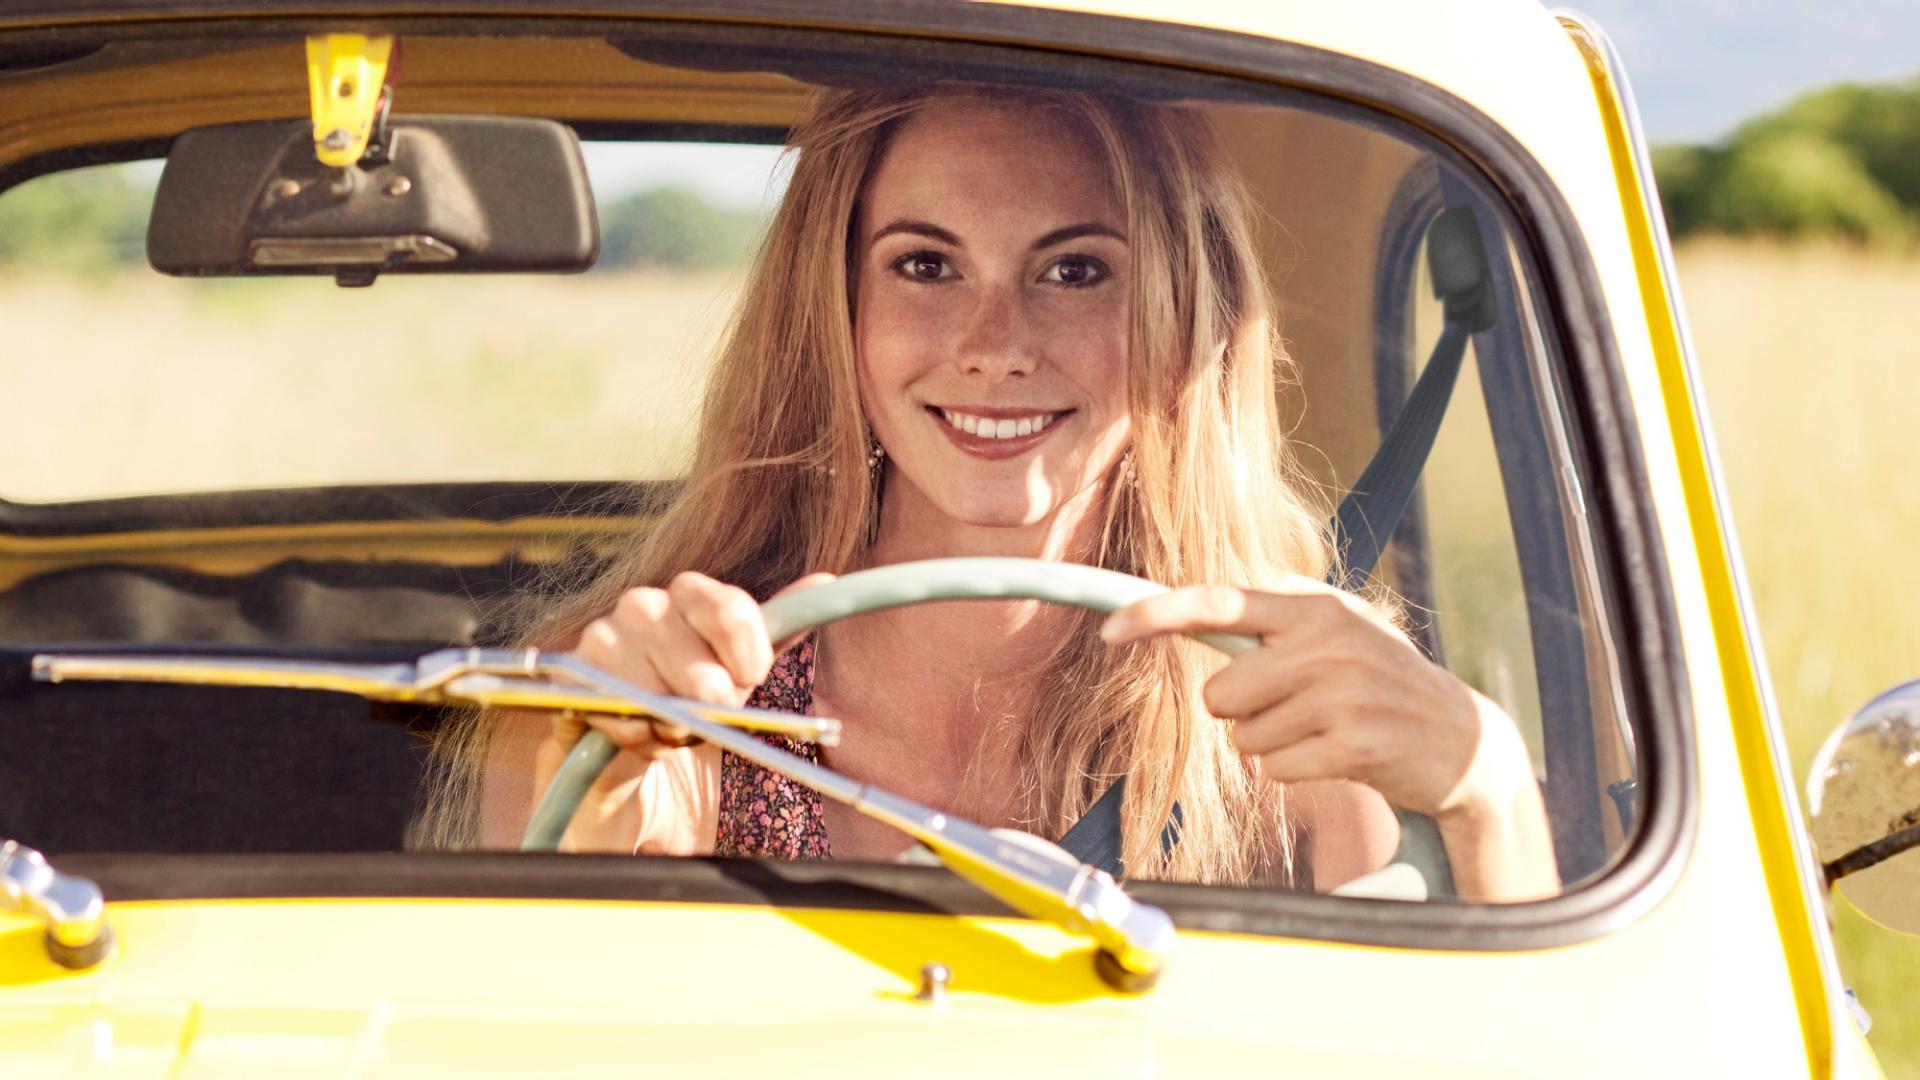 Eine junge Frau sitzt lächelnd in einem gelben Auto.